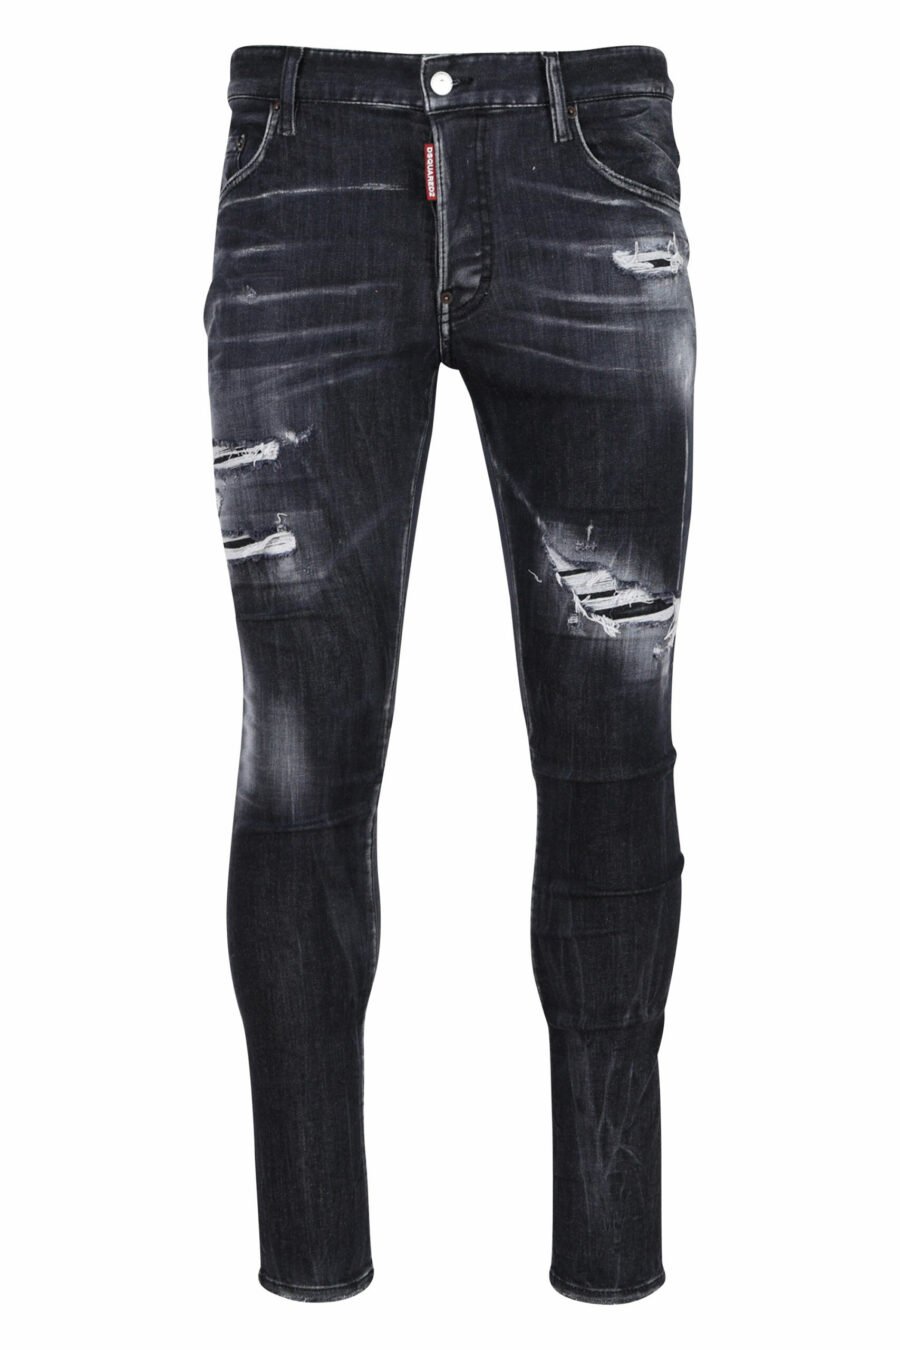 Super twinkey Jeans schwarz semi-getragen und zerrissen - 8054148103088 skaliert